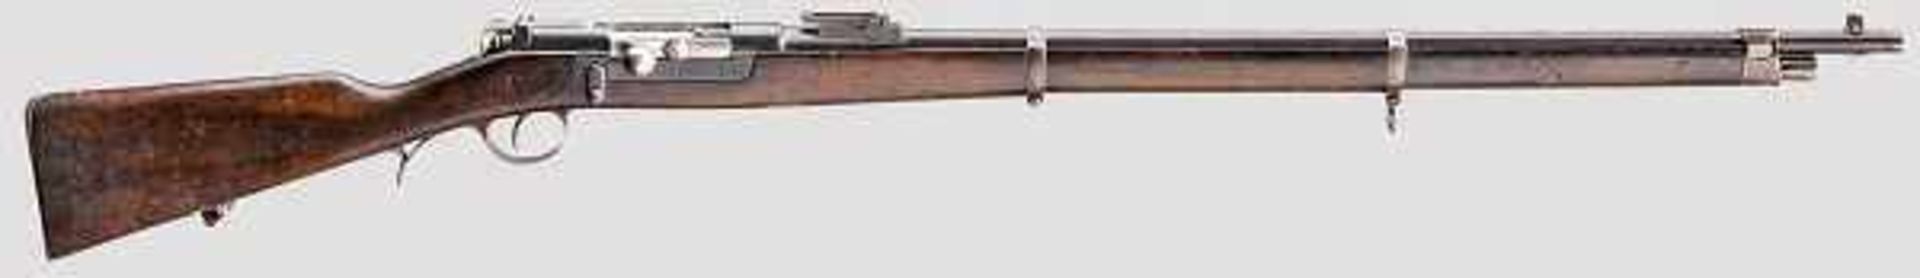 Gewehr Kropatschek Mod. 1886 Kal. 8 mm Krop. (8 x 60R), Nr. MM 457, nicht nummerngleich. Fast